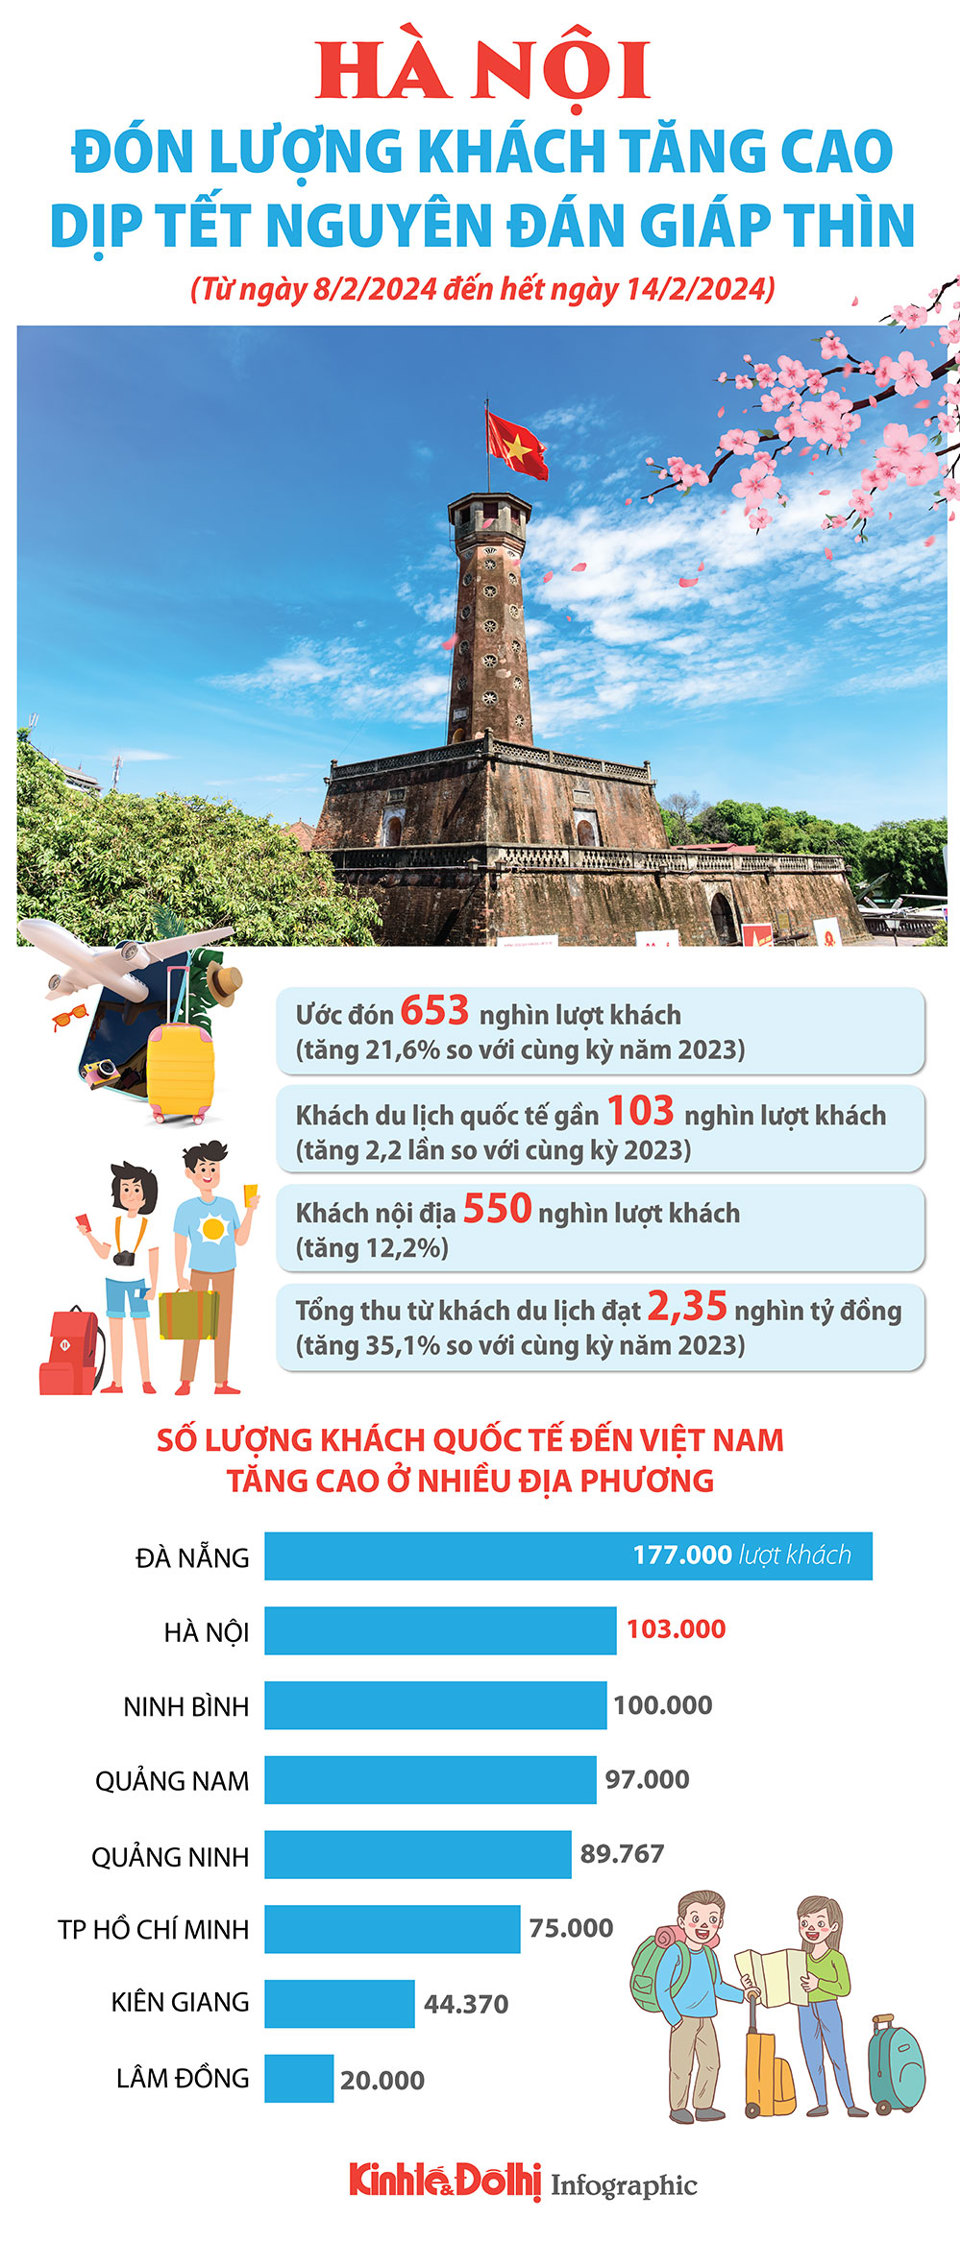 Hà Nội đón 653.000 lượt khách dịp nghỉ Tết Nguyên đán Giáp Thìn 2024 - Ảnh 1